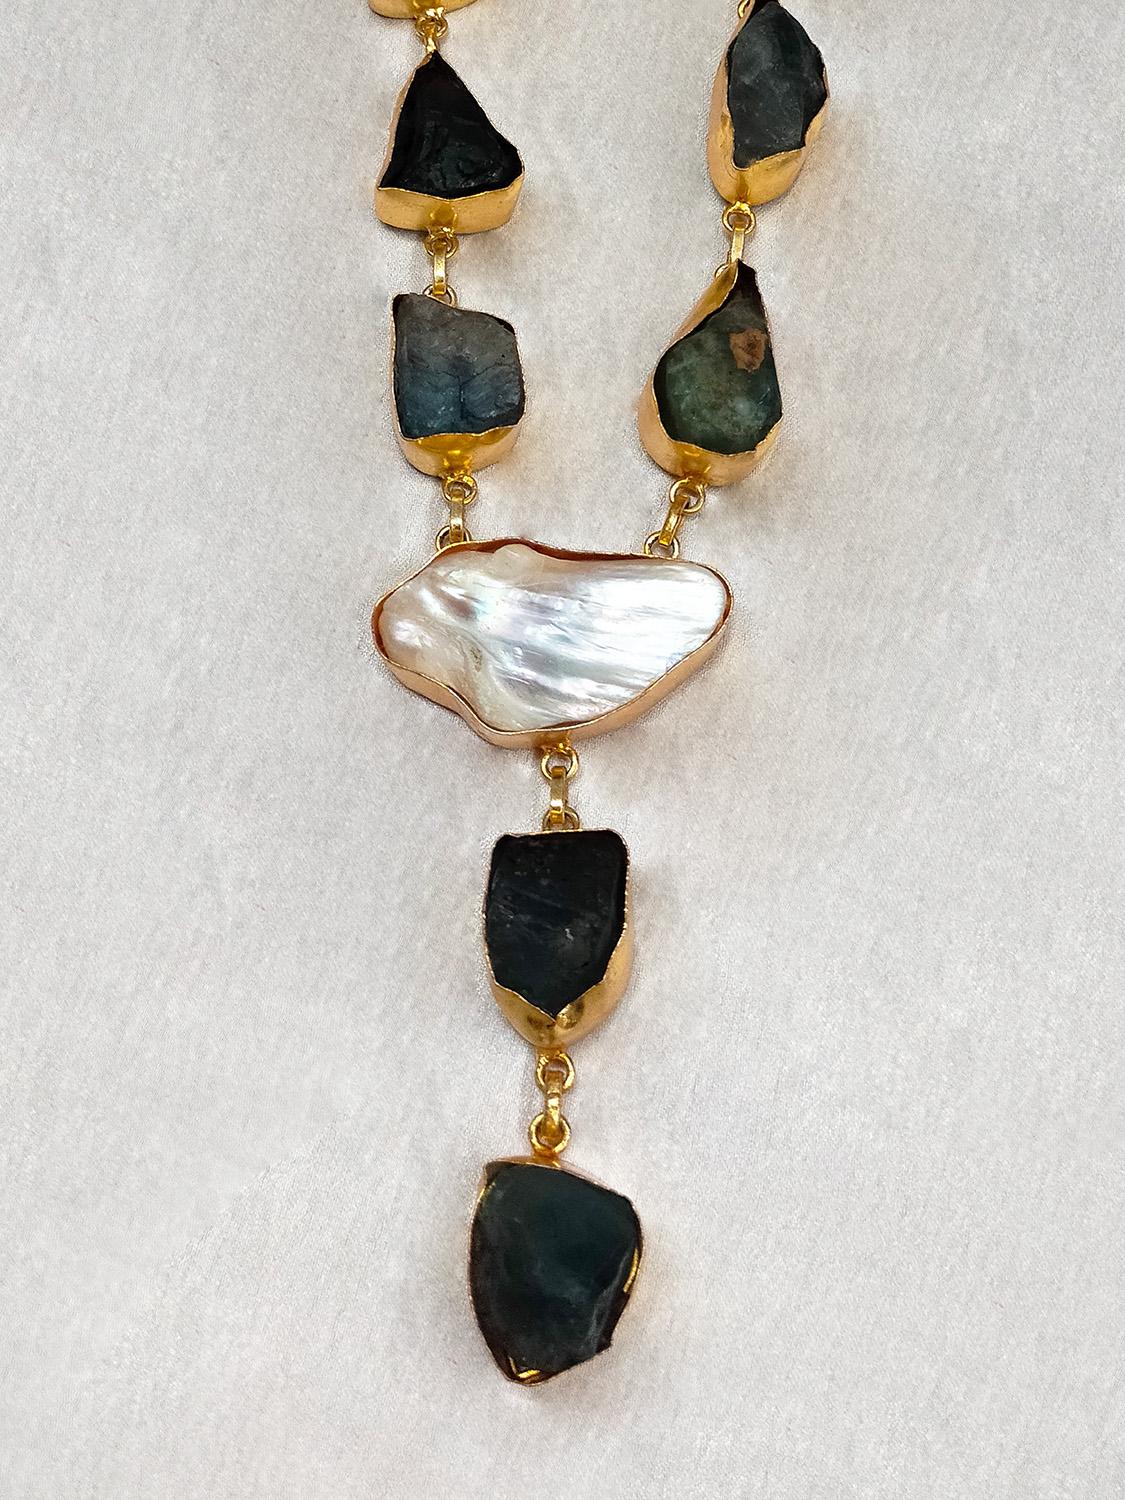 Brass Natural Semi Precious Stone Necklace